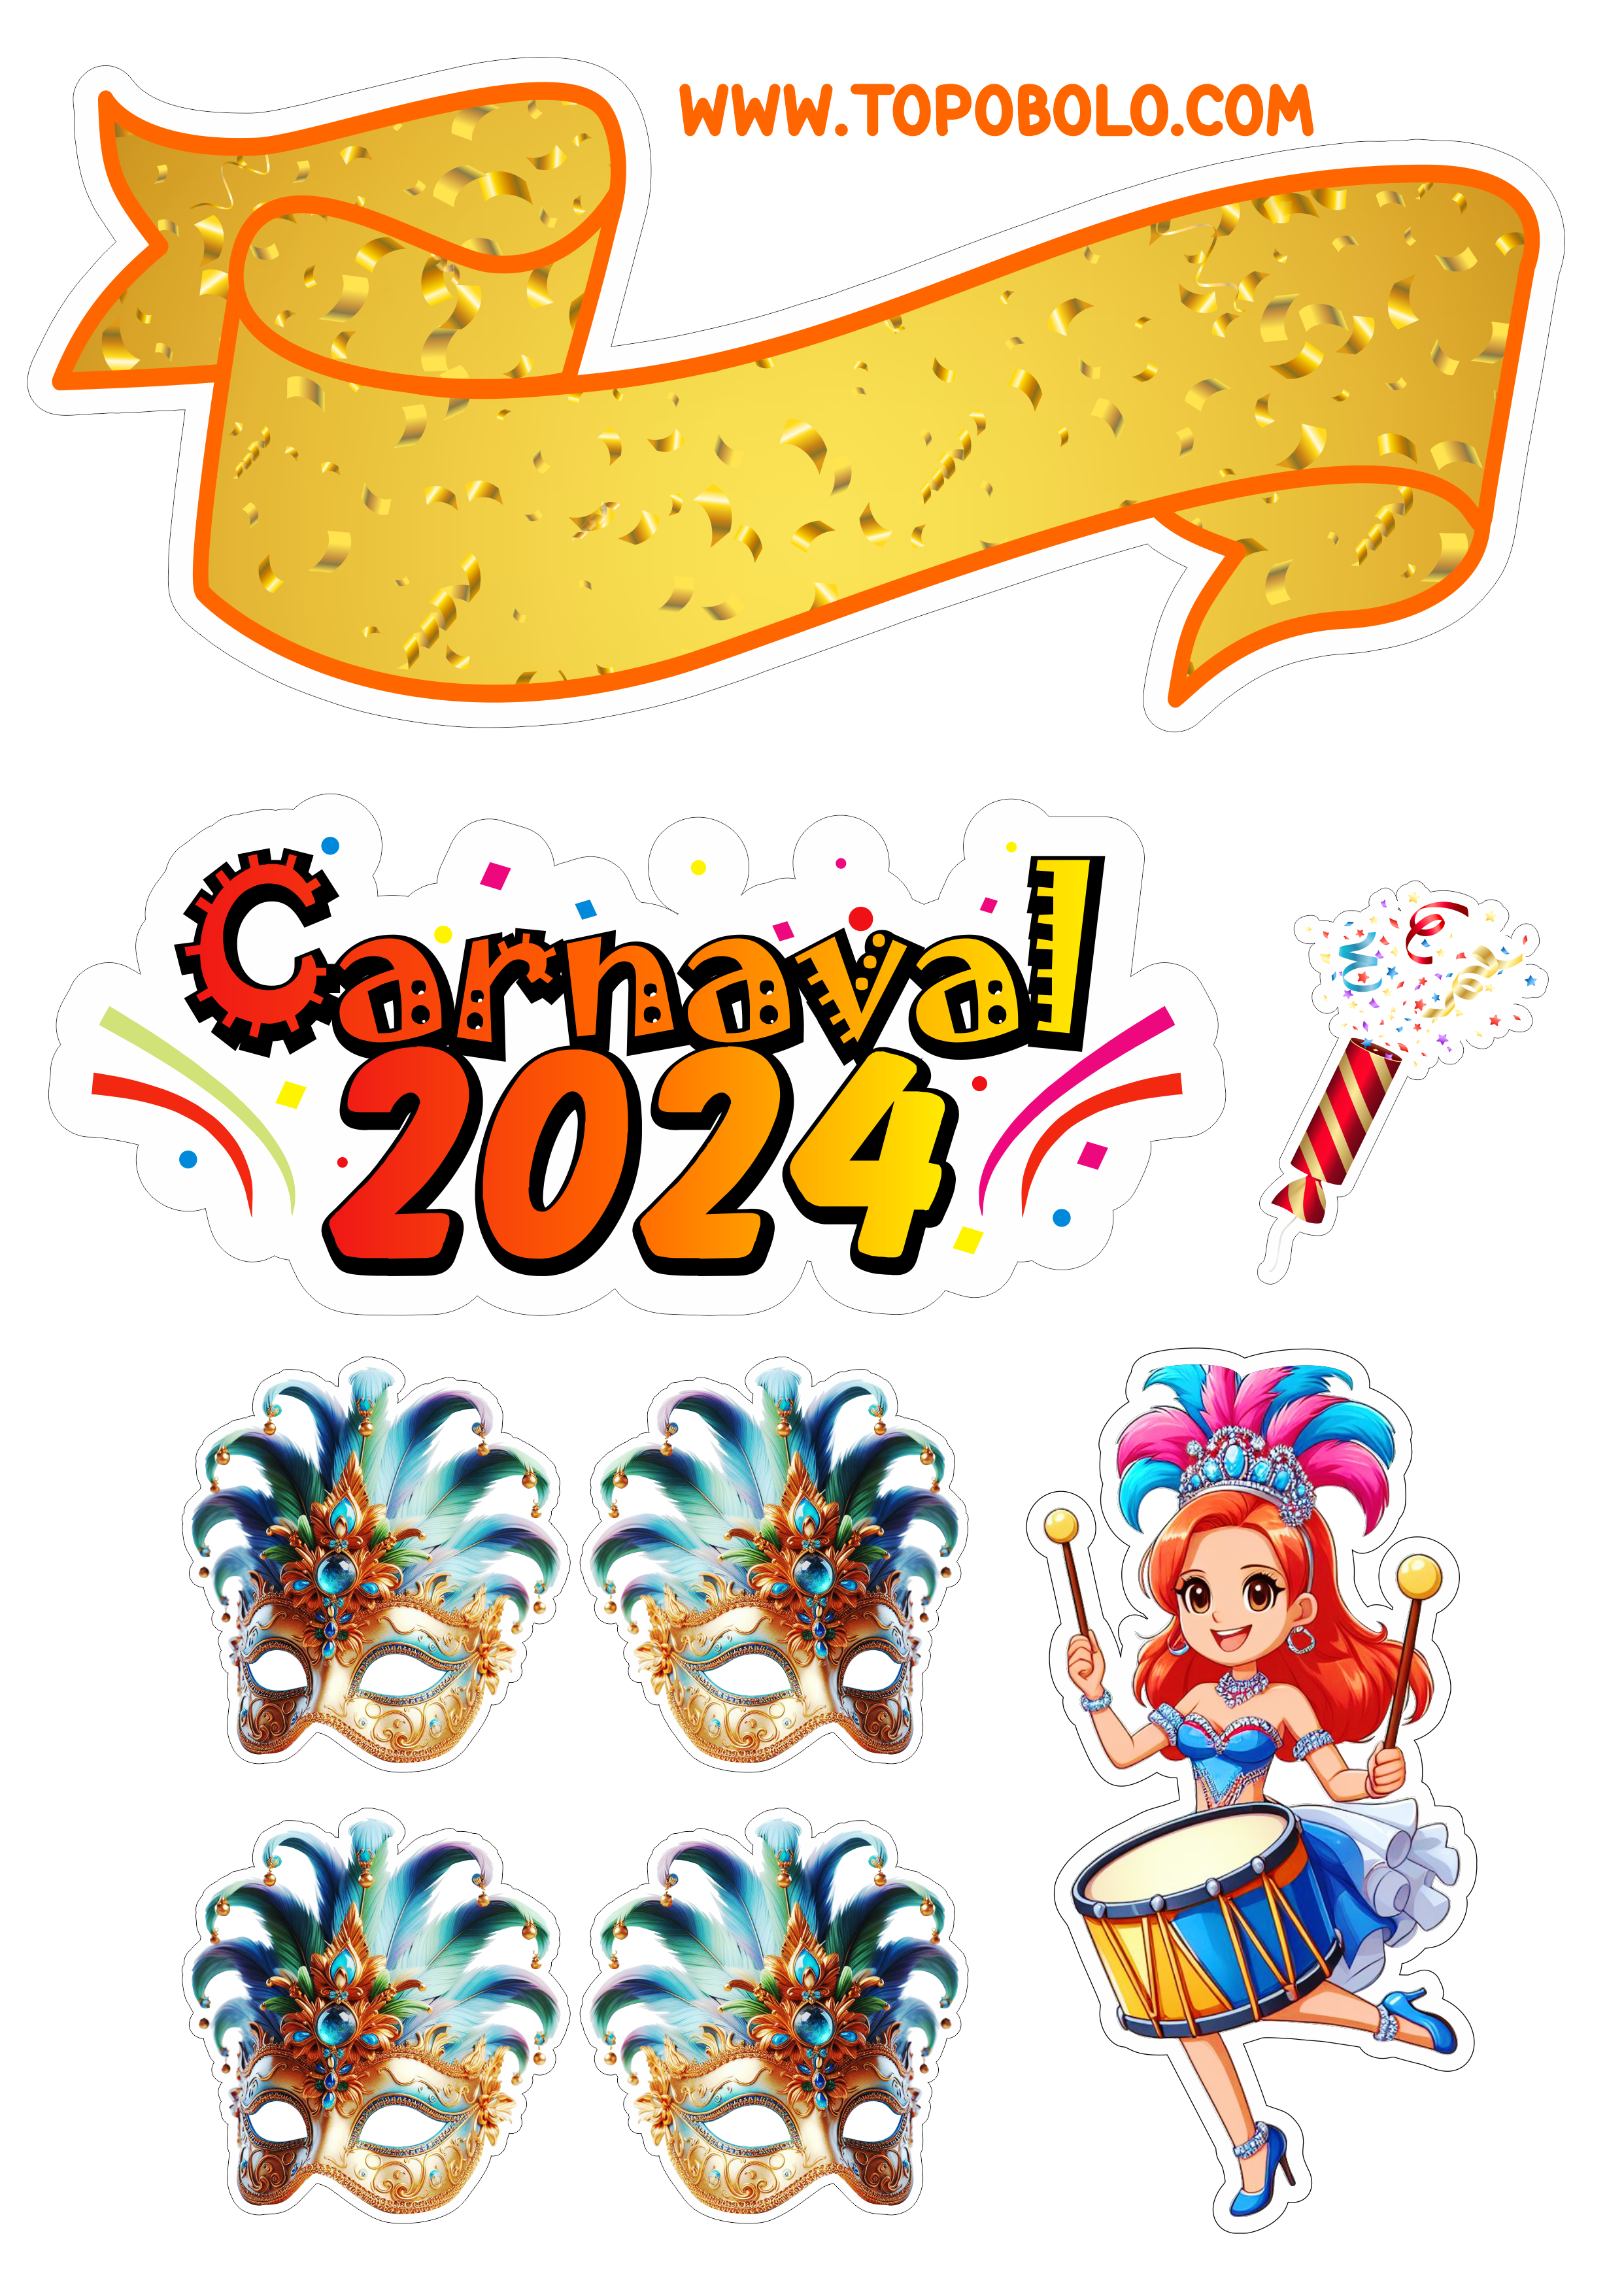 Topo de bolo carnaval 2024 decoração de aniversário baile de máscaras confete png